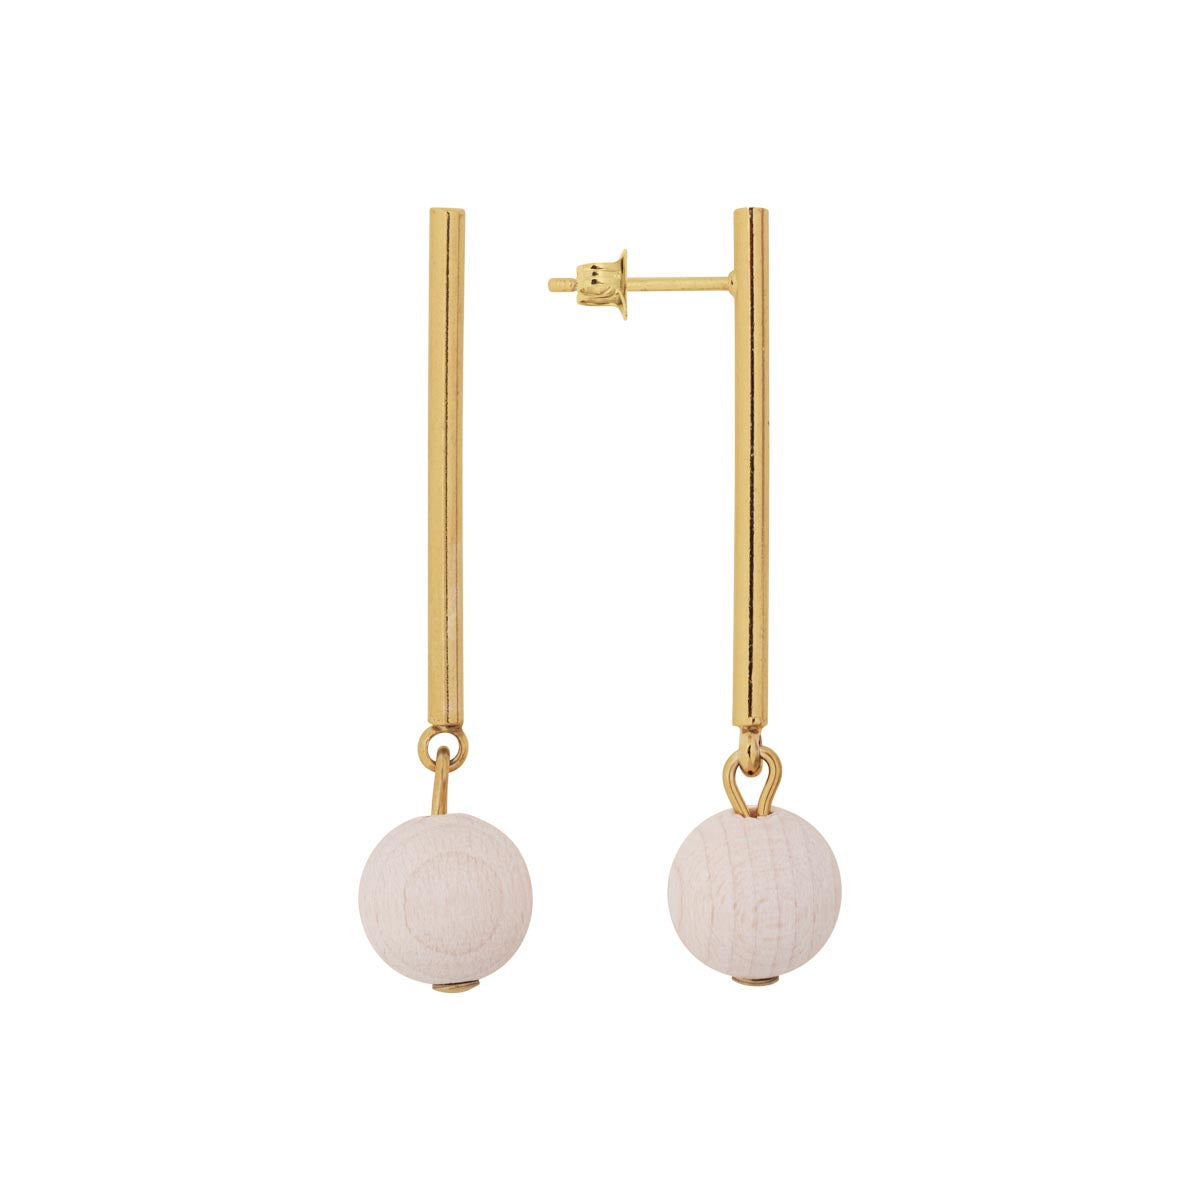 Lilli earrings, ecru and gold